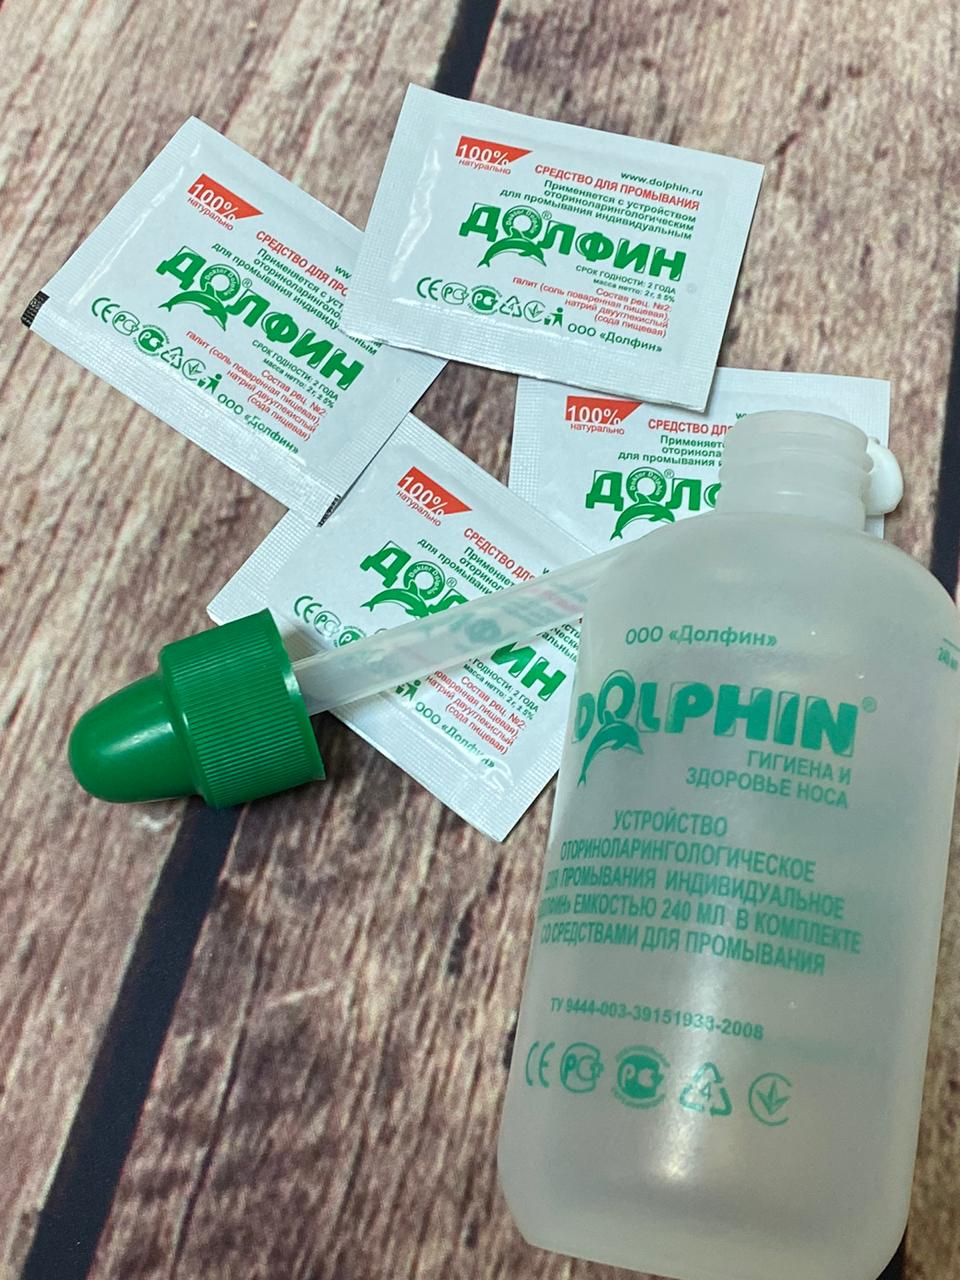 Долфин при аллергии (Dolphin)